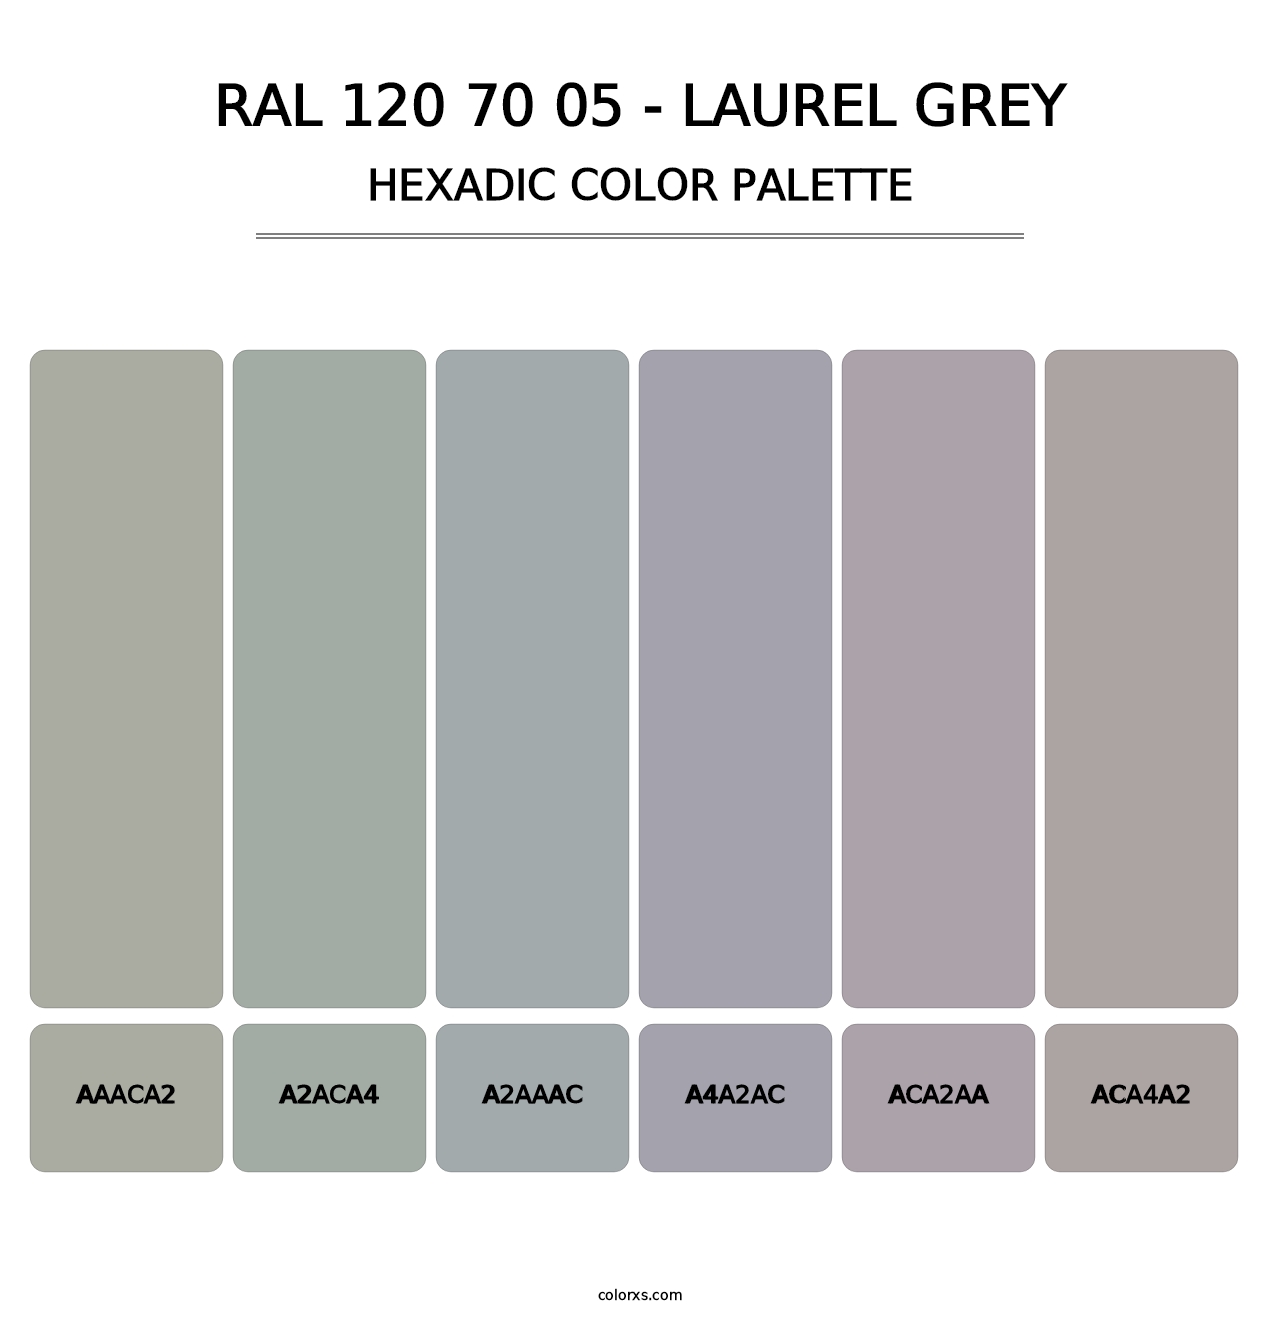 RAL 120 70 05 - Laurel Grey - Hexadic Color Palette